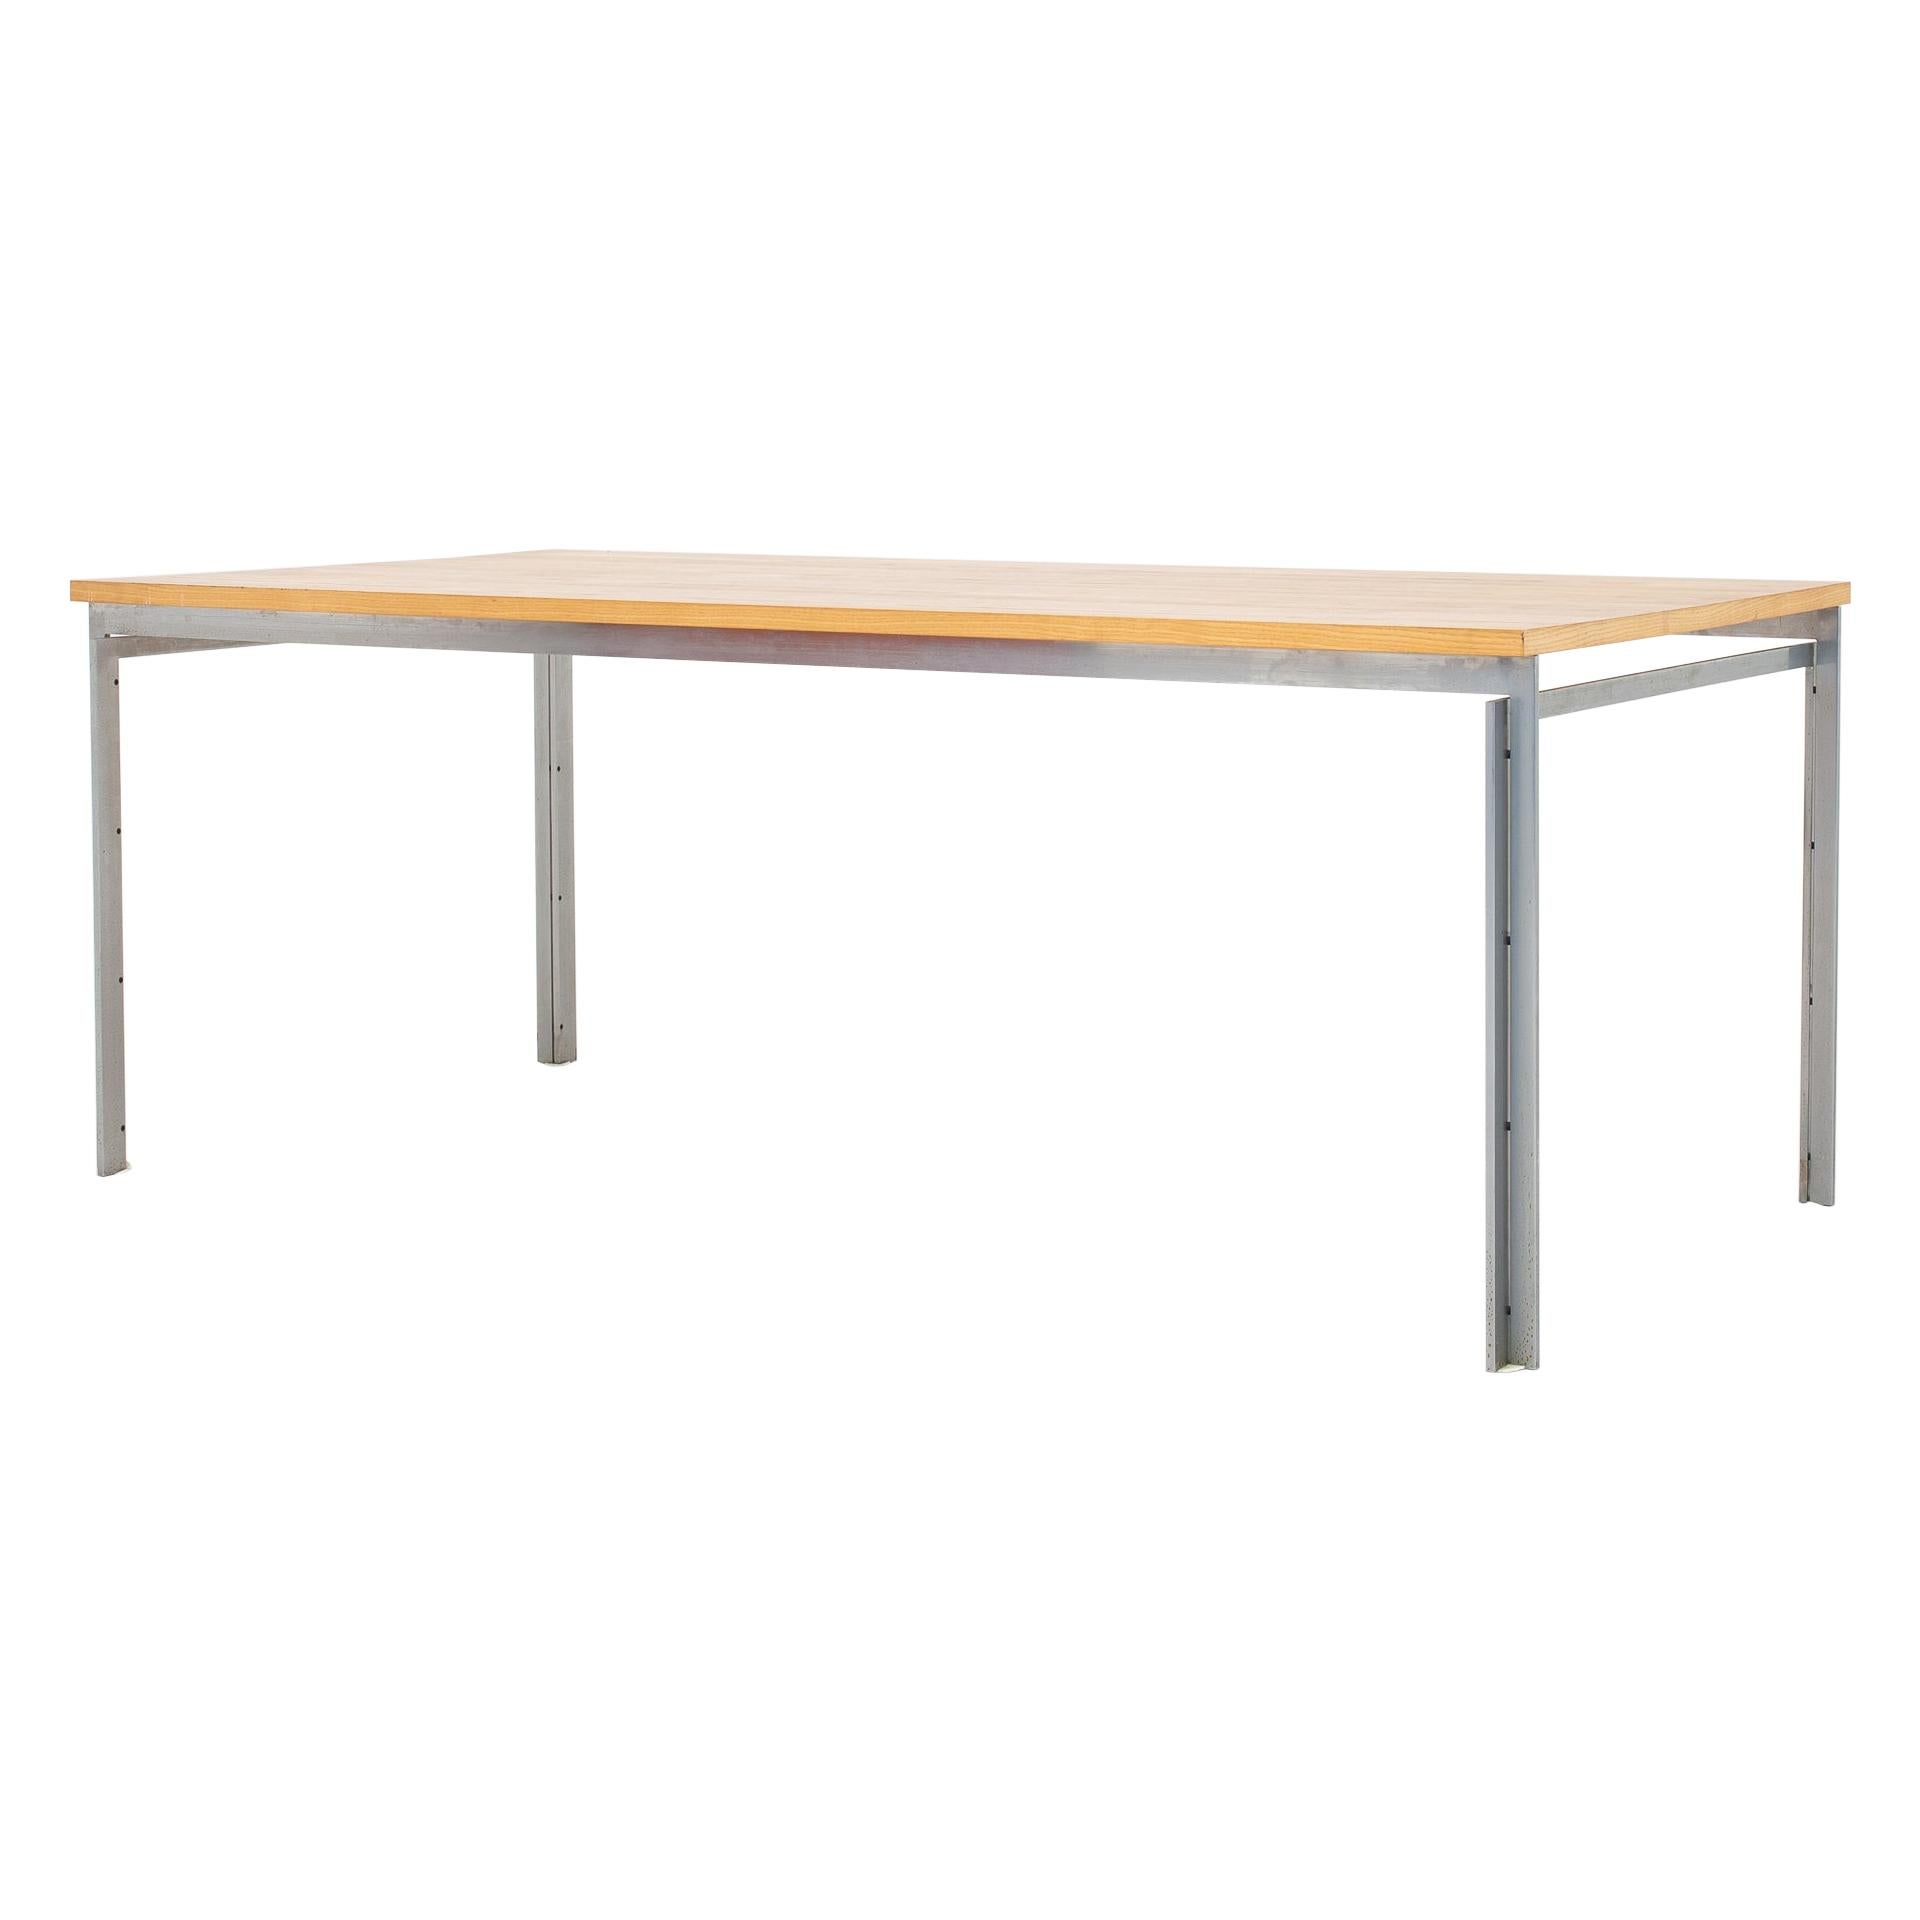 PK 55 Table by Poul Kjærholm